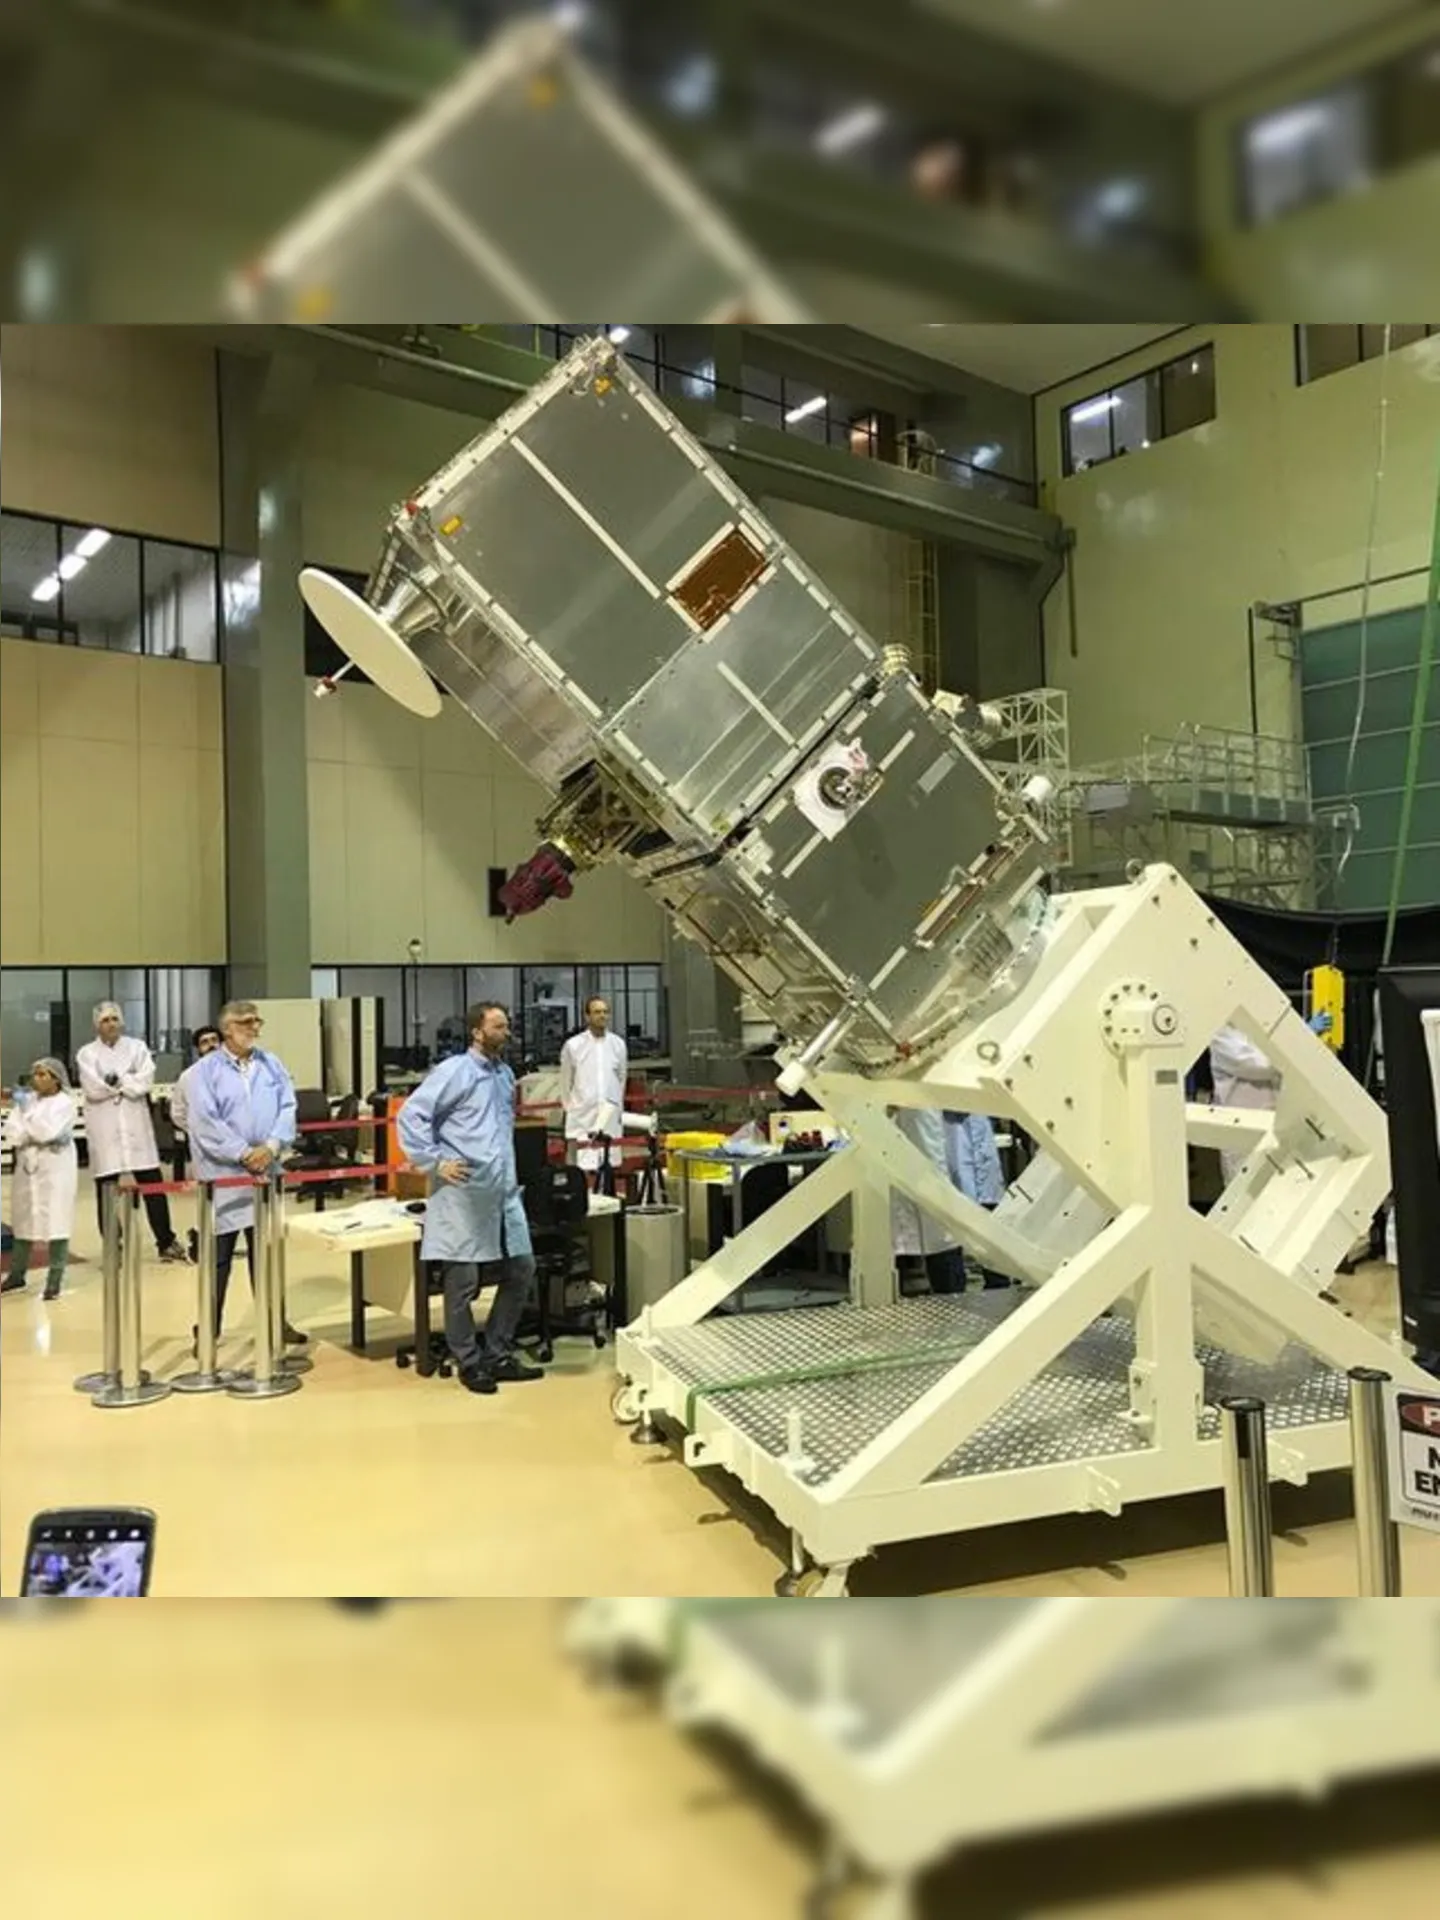 O Amazonia 1 é o primeiro satélite de Observação da Terra completamente projetado, integrado, testado e operado pelo Brasil.